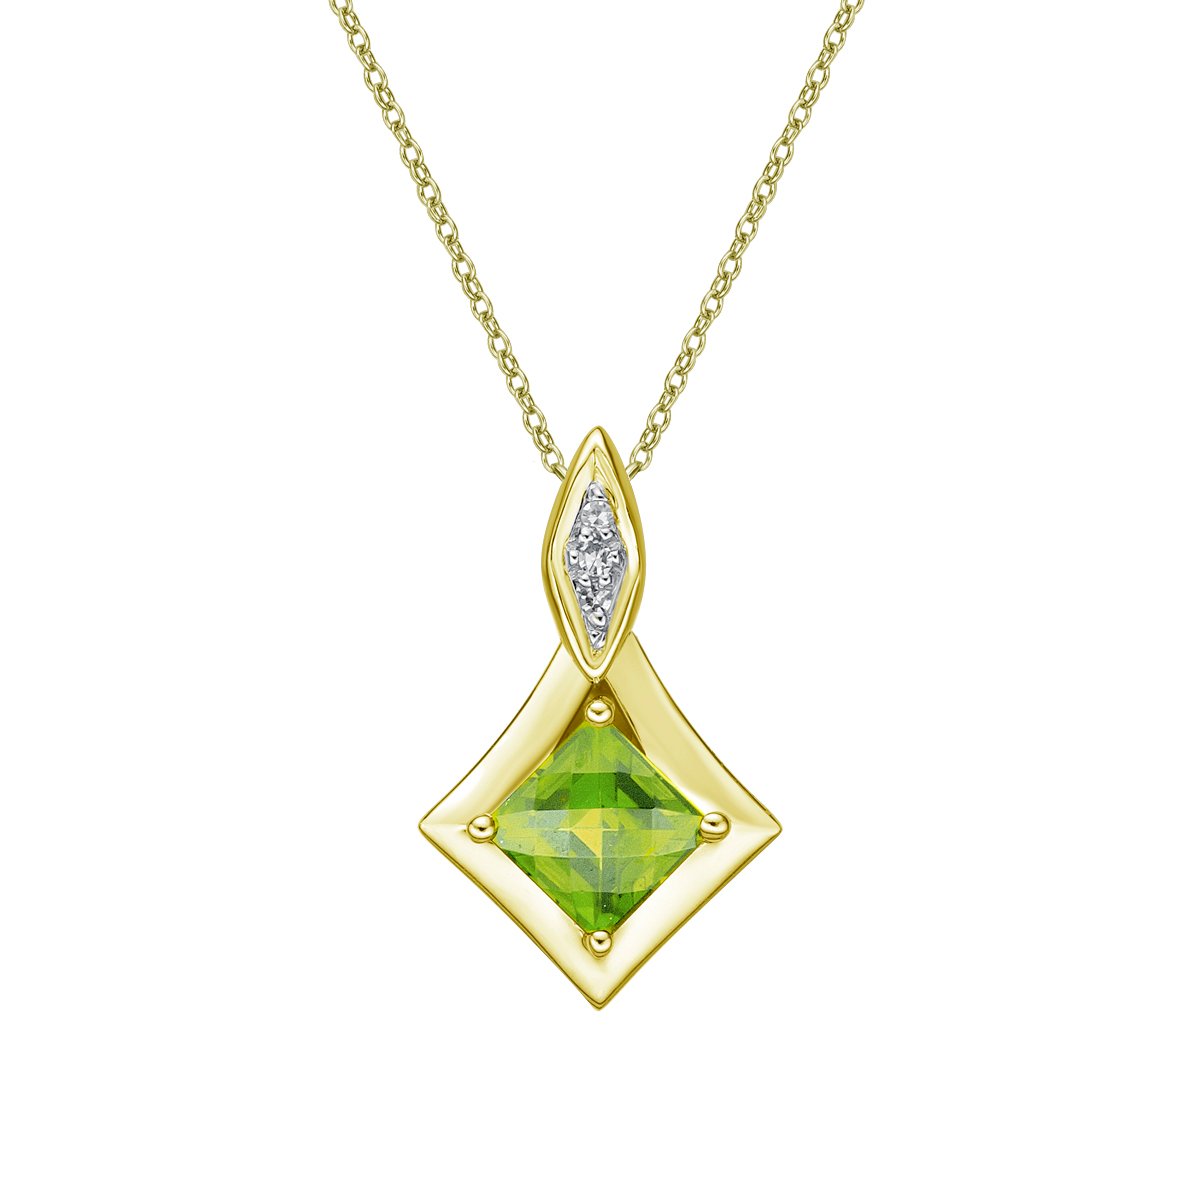 10K Yellow Gold Prong-set Peridot pendant with diamond accent